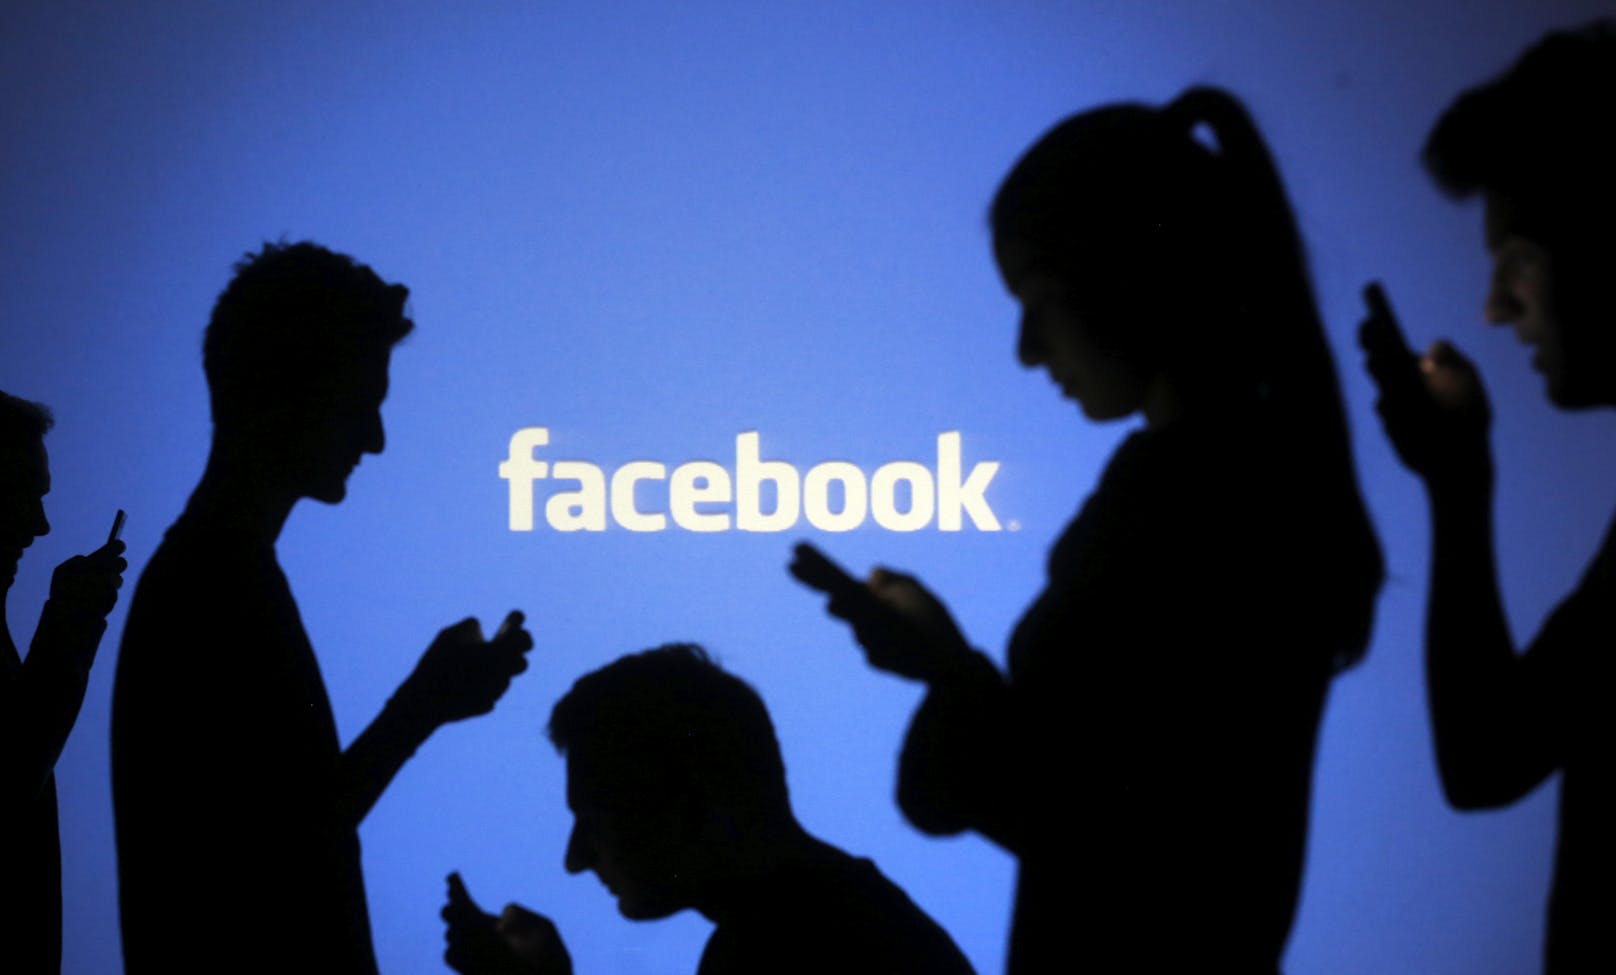 Die Daten von jedem zweiten Facebook-Nutzer und jeder zweiten Facebook-Nutzerin sind im Darknet aufgetaucht.